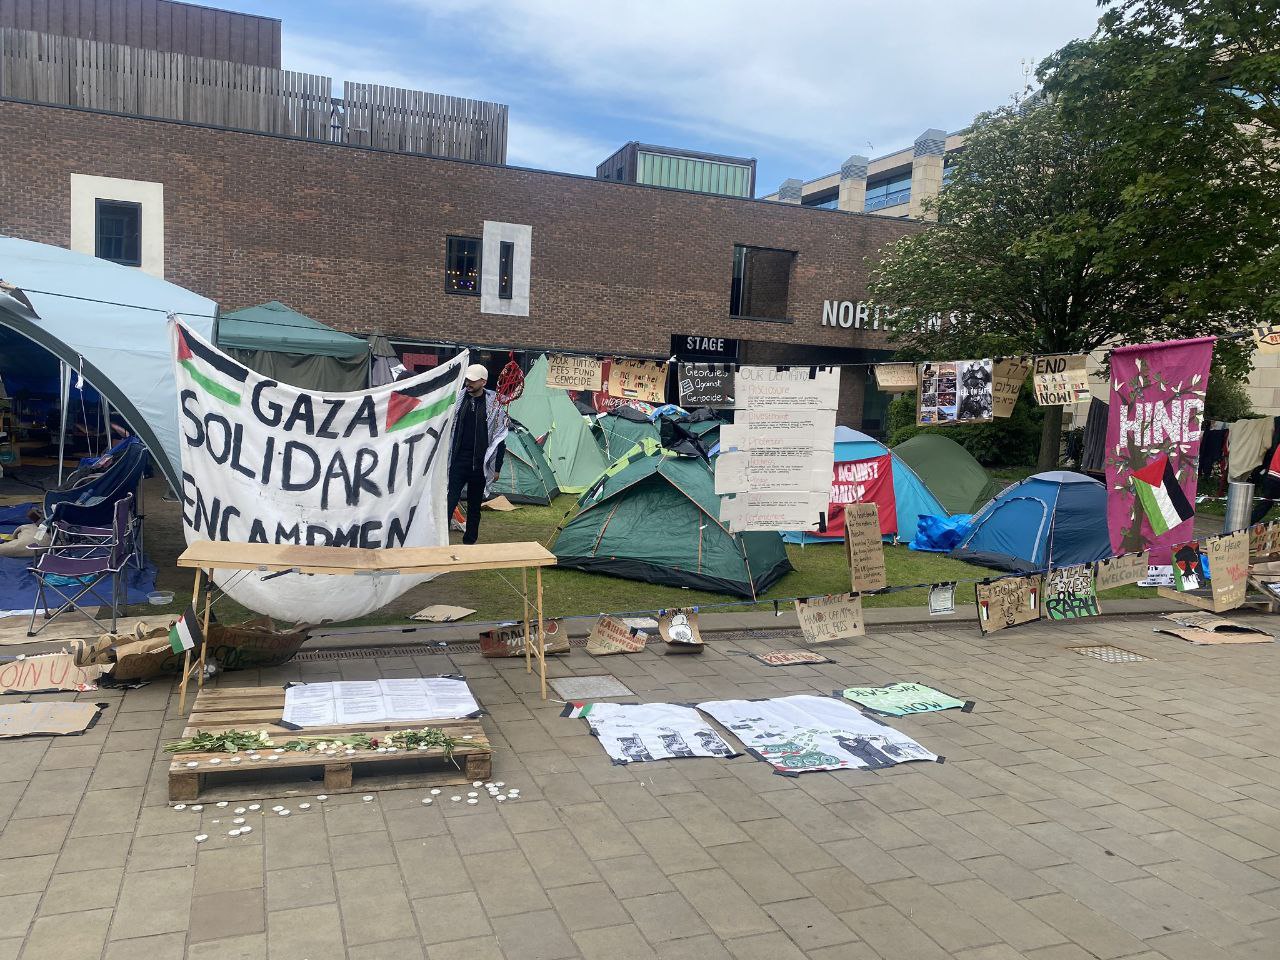 صور من مخيم التضامن مع فلسطين والرافض للحرب المستمرة على قطاع غزة، في جامعة نيوكاسل البريطانية 